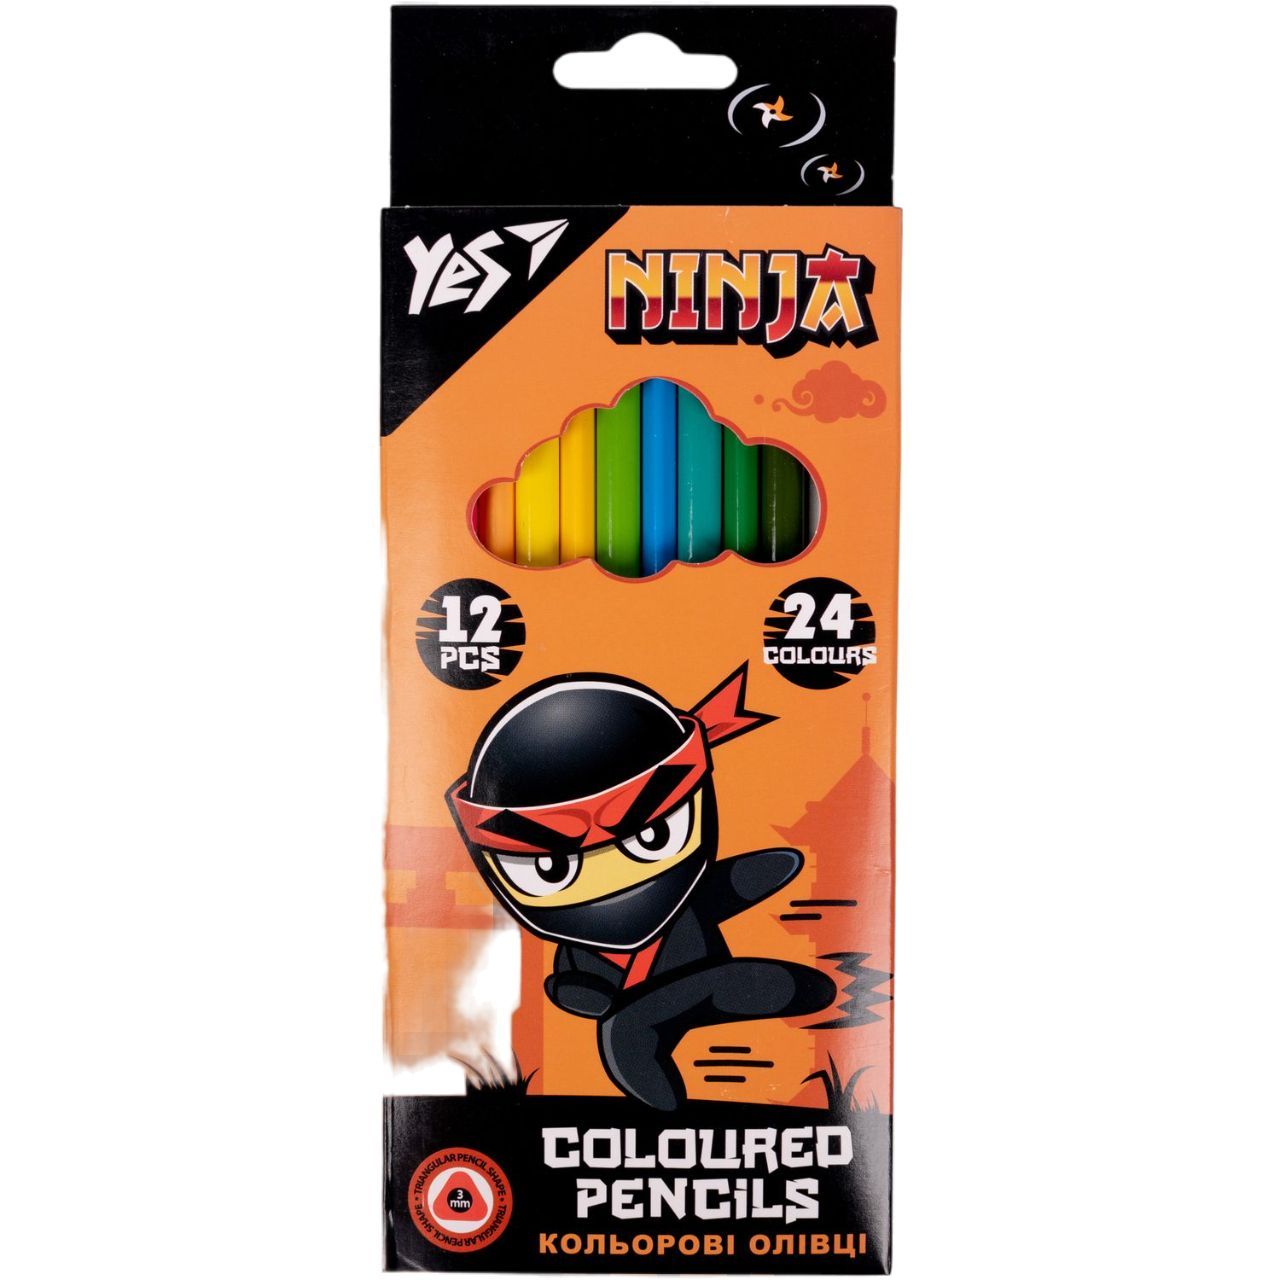 Photos - Pencil Yes Олівці кольорові  Ninja, двосторонні, 12 шт., 24 кольори  (290707)